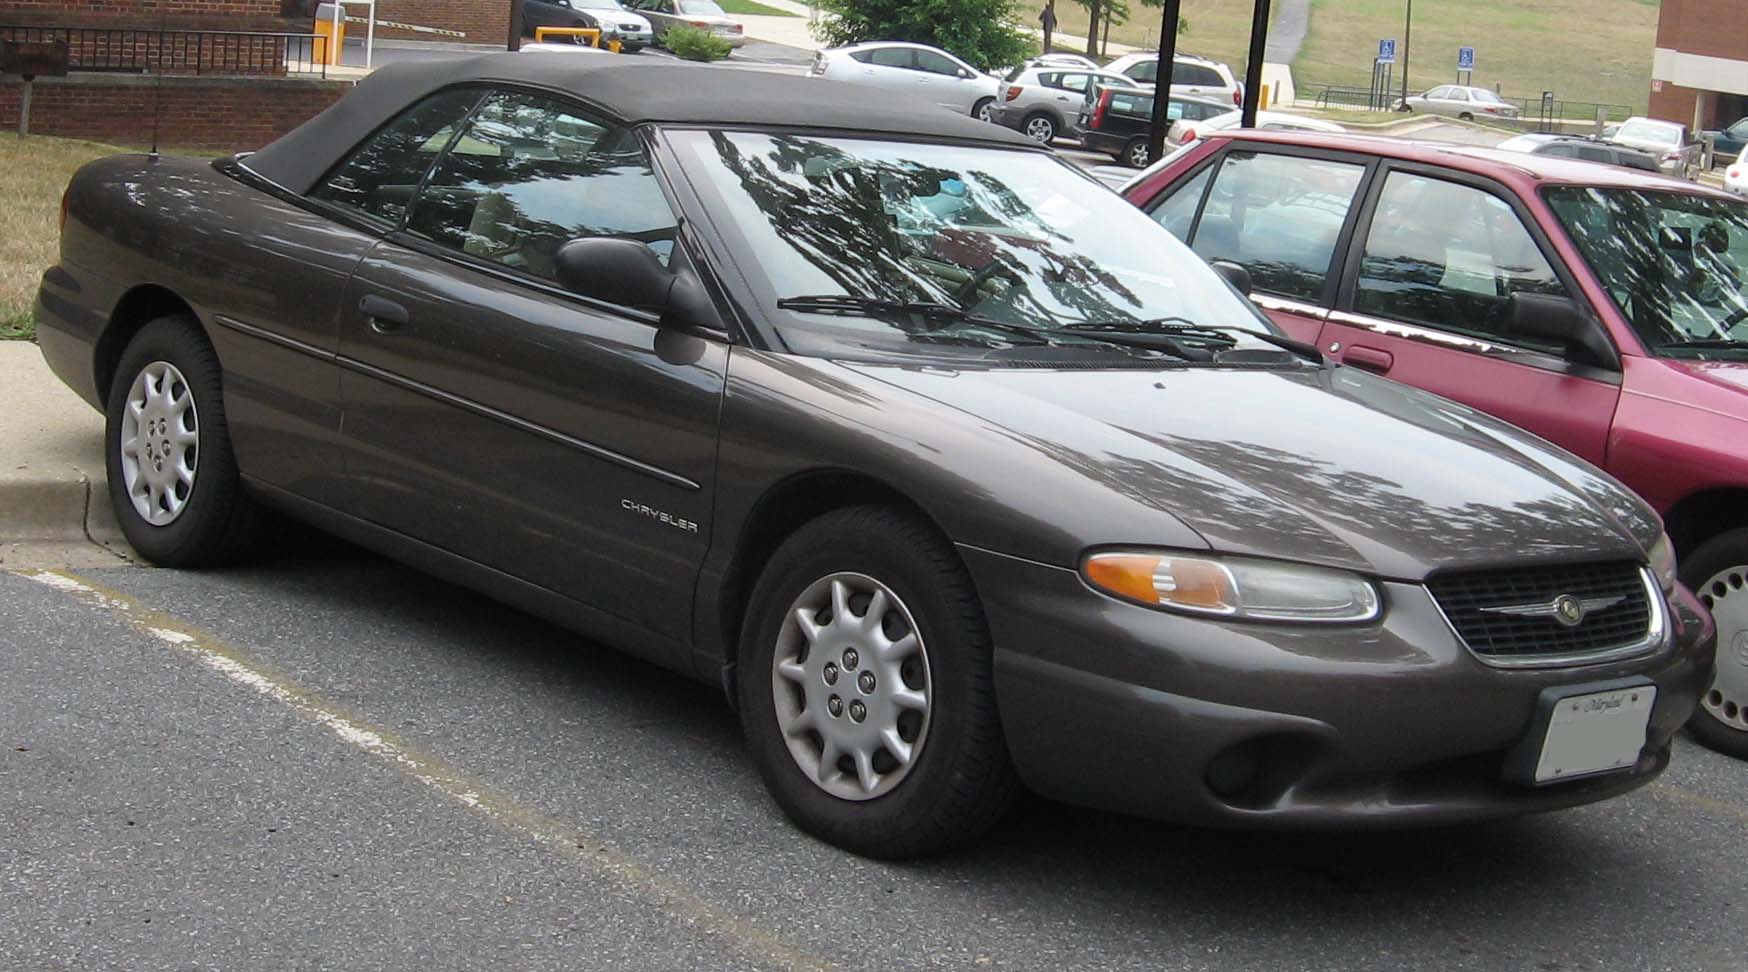 File:99-00 Chrysler Sebring Convertible.jpg - Wikimedia Commons